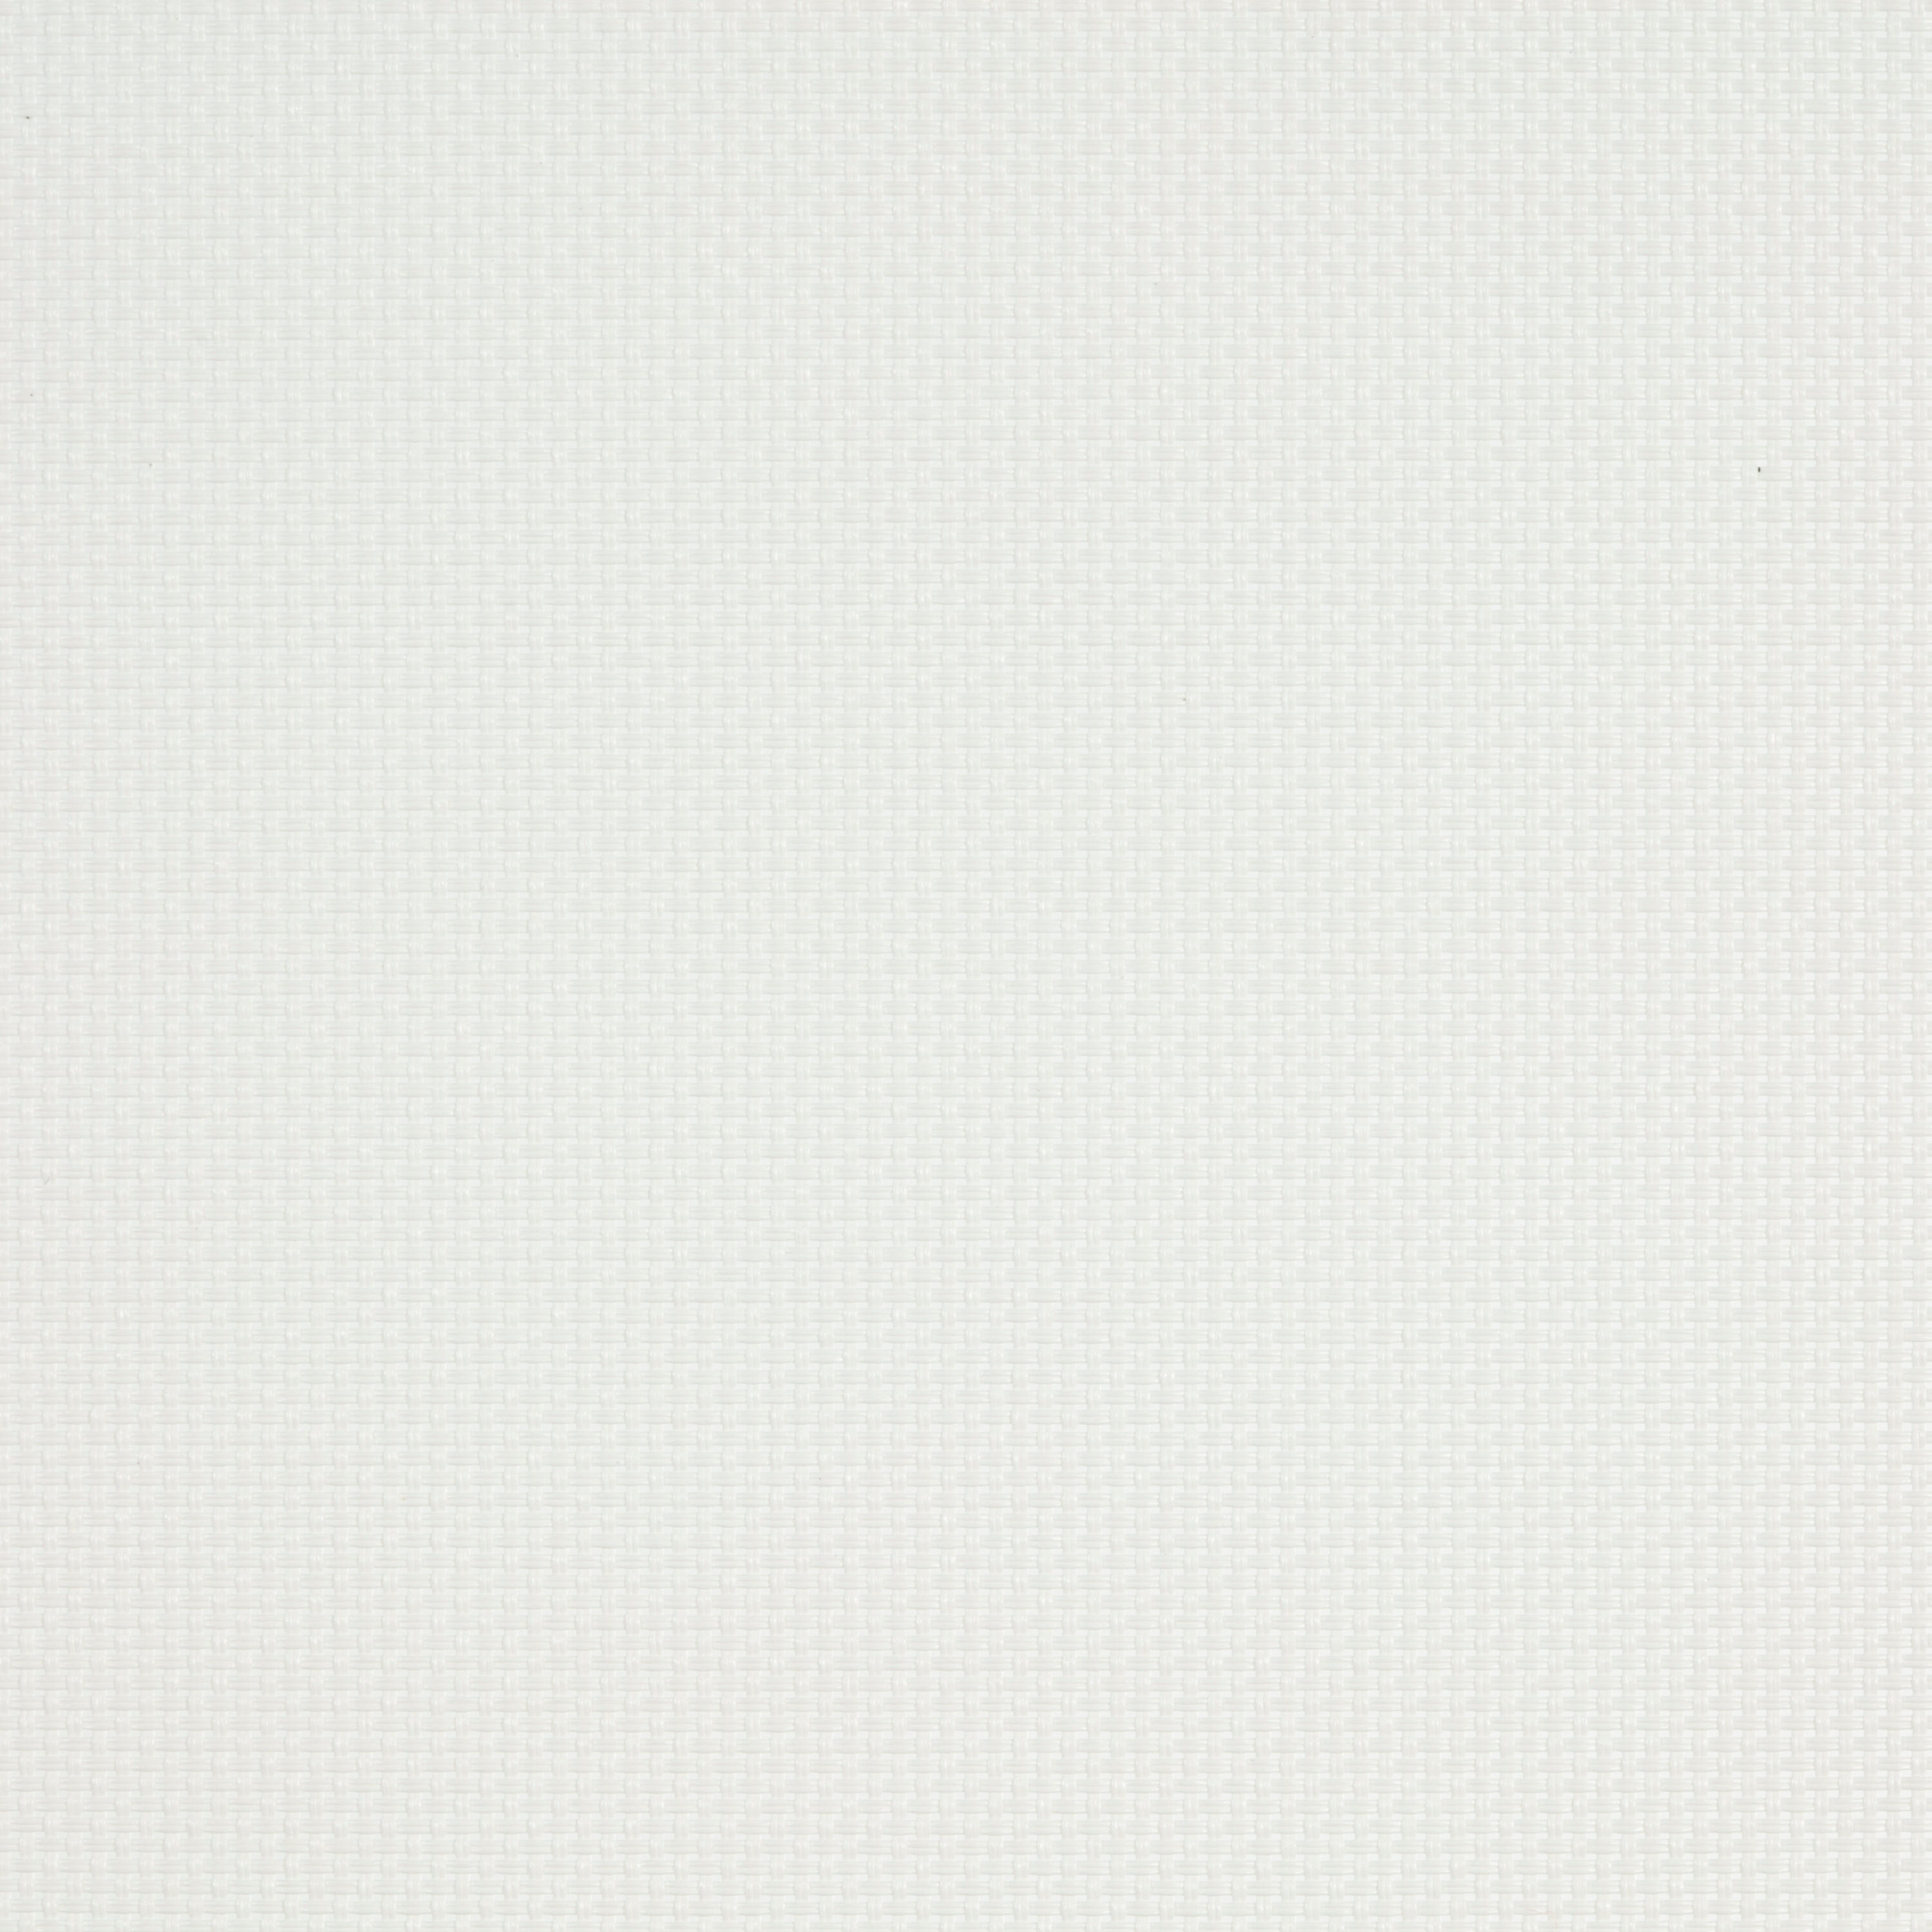 Tenda a rullo filtrante INSPIRE Brasilia bianco 120 x 250 cm - 3